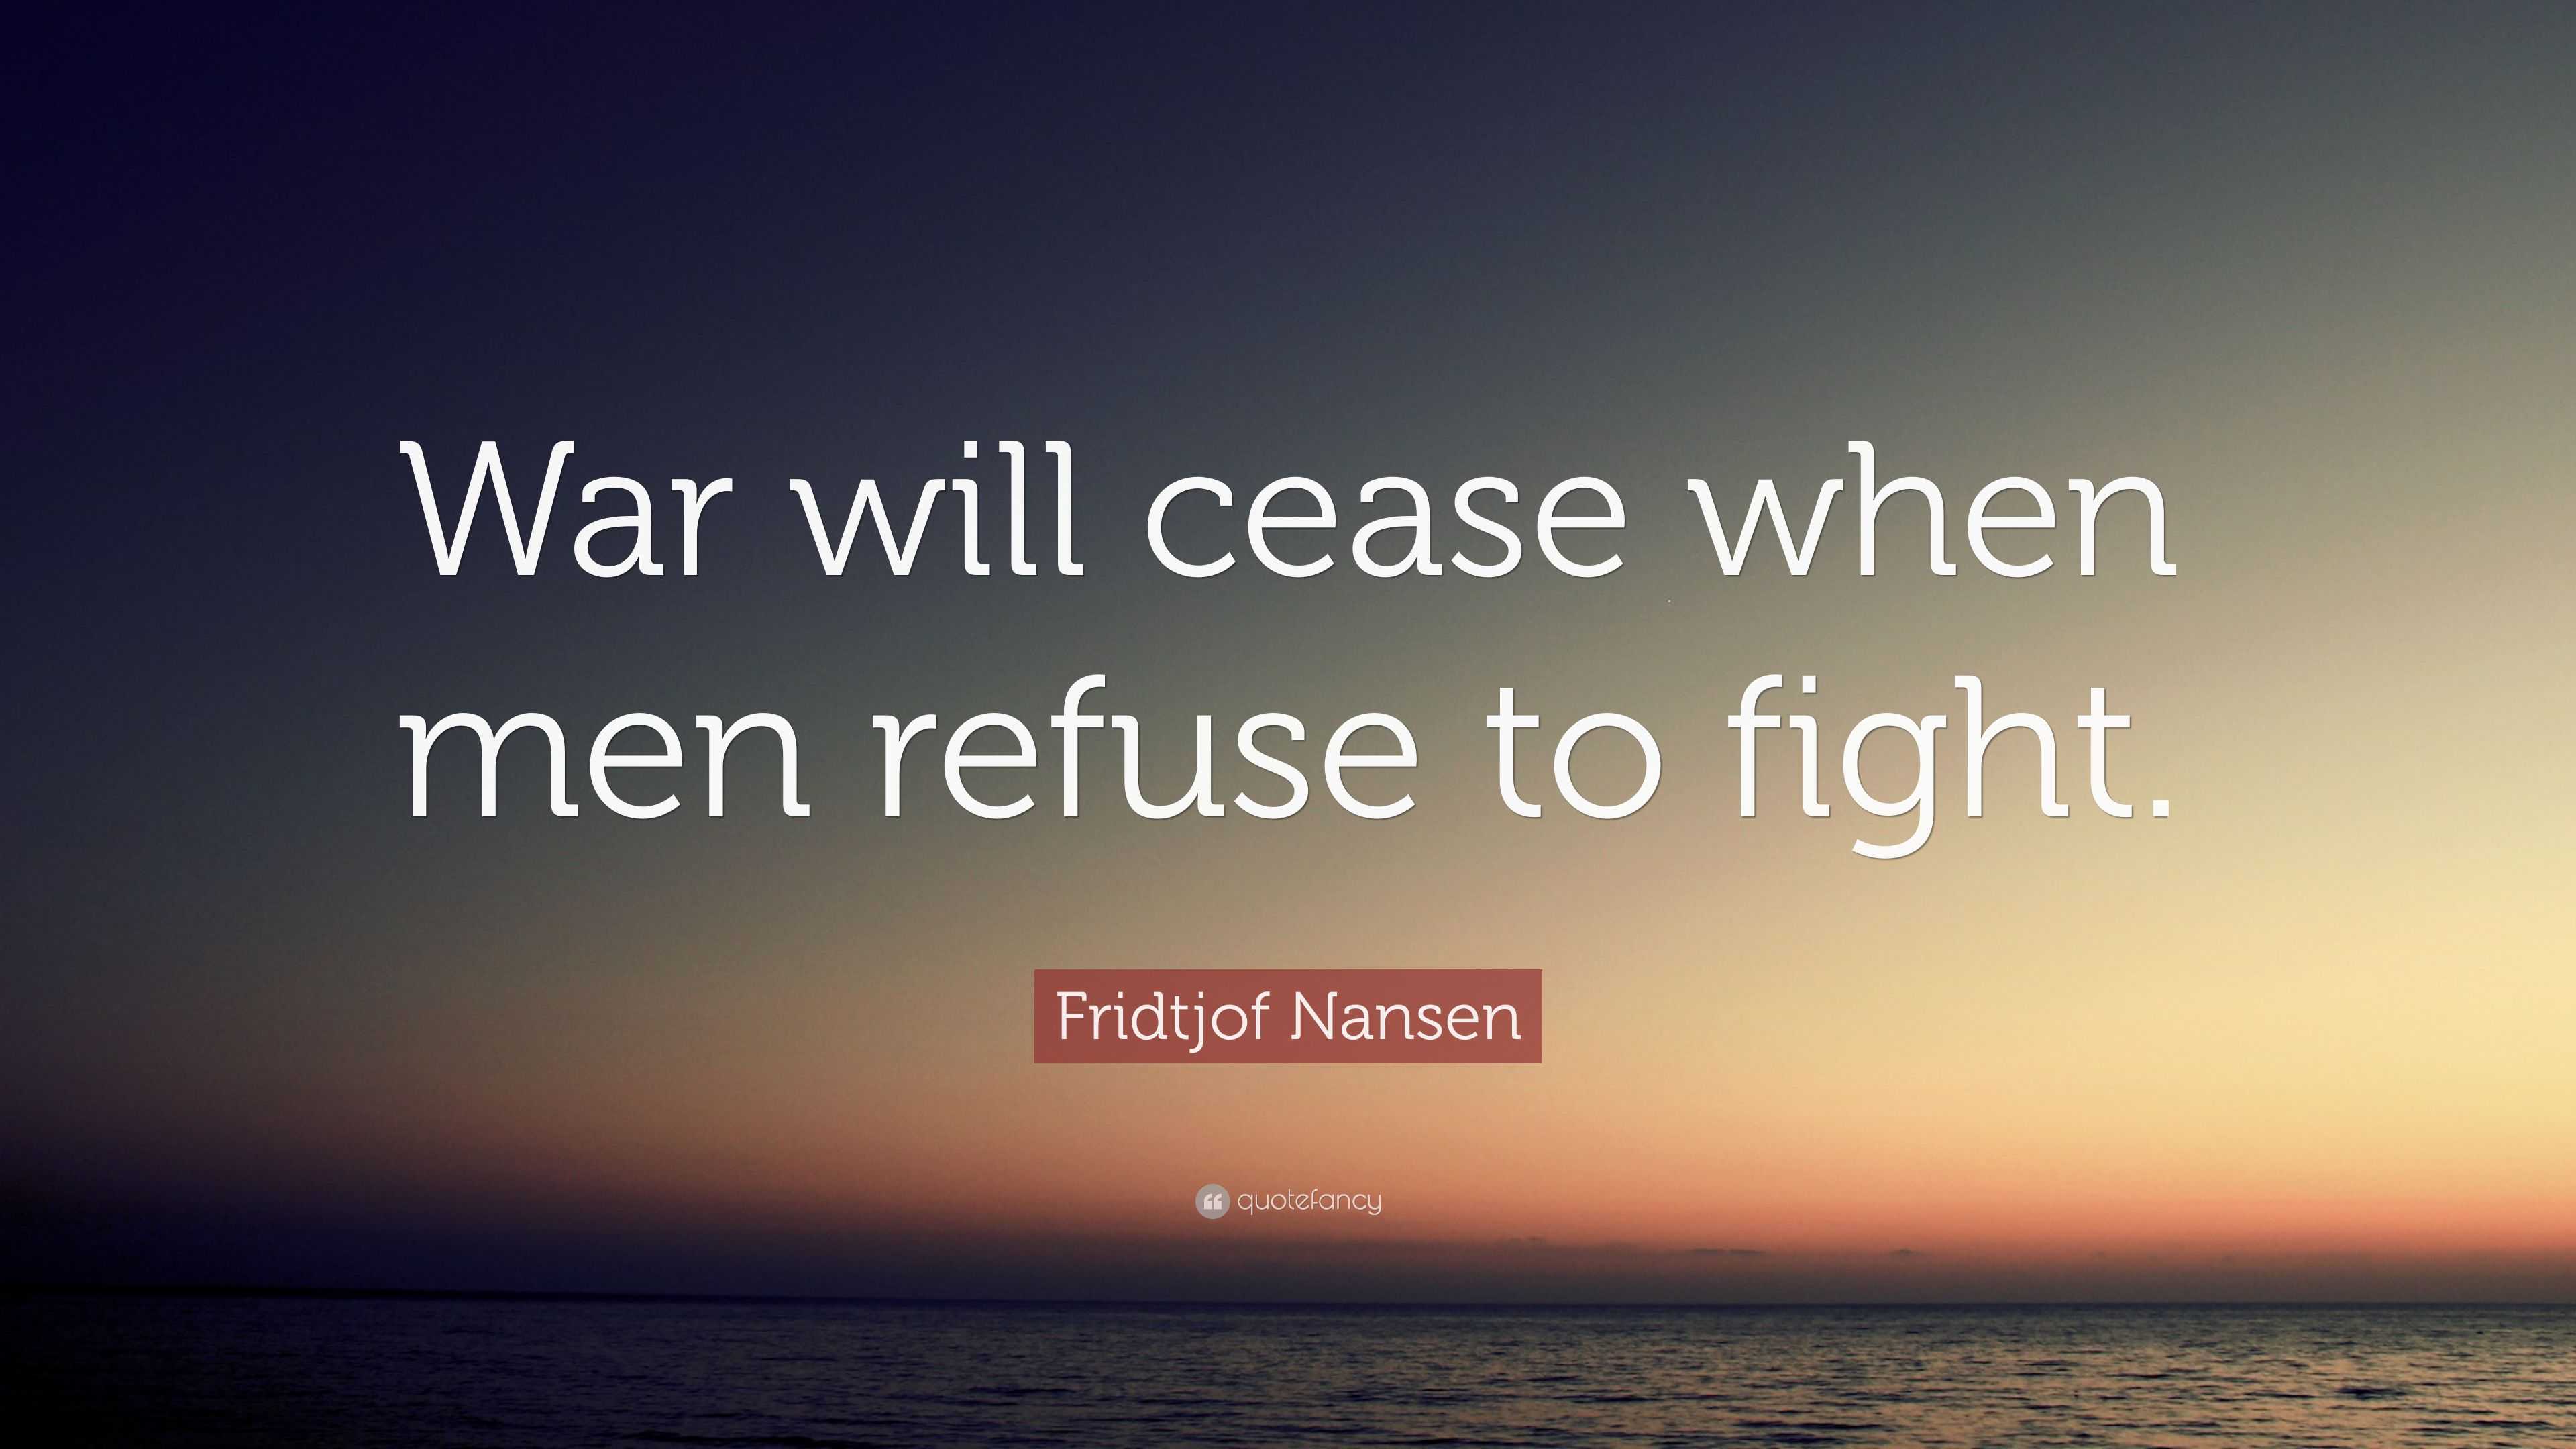 Fridtjof Nansen Quote: “War will cease when men refuse to fight.”